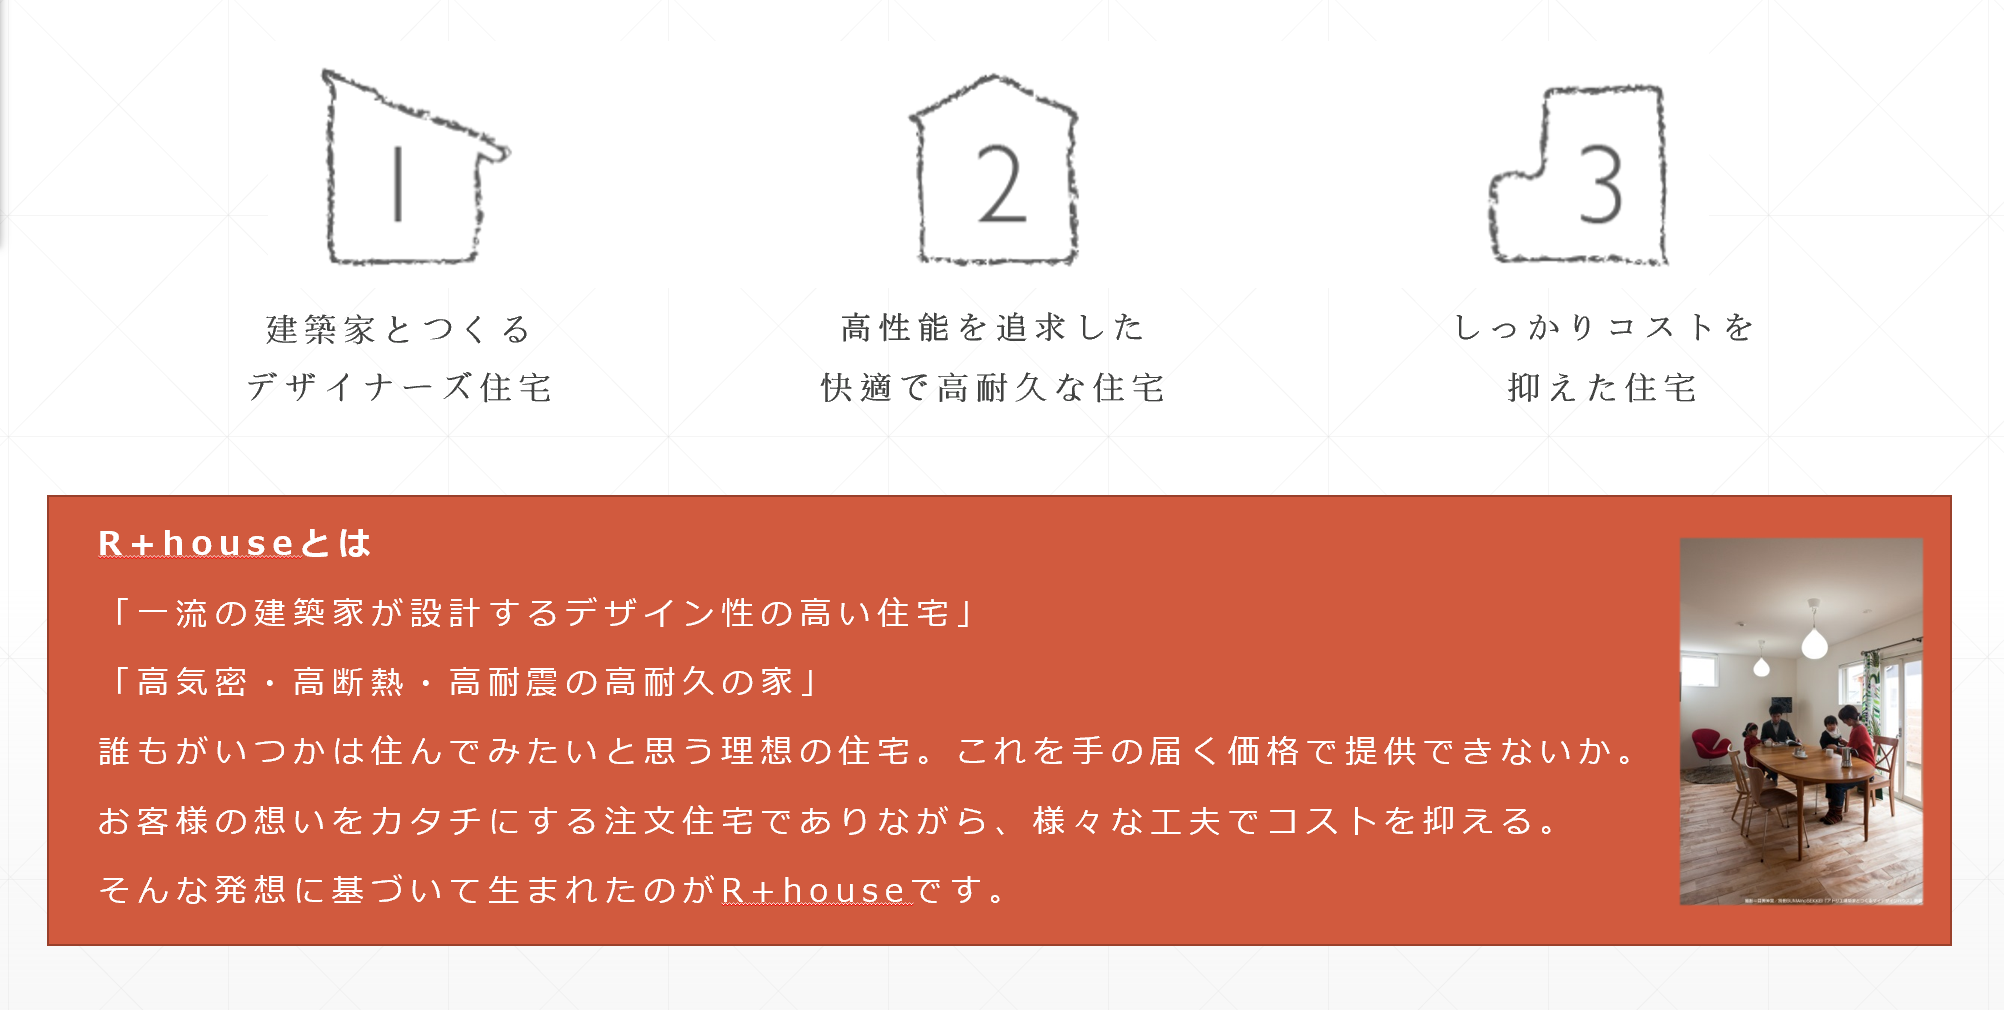 ■R+house 札幌ドーム前というだけあって..